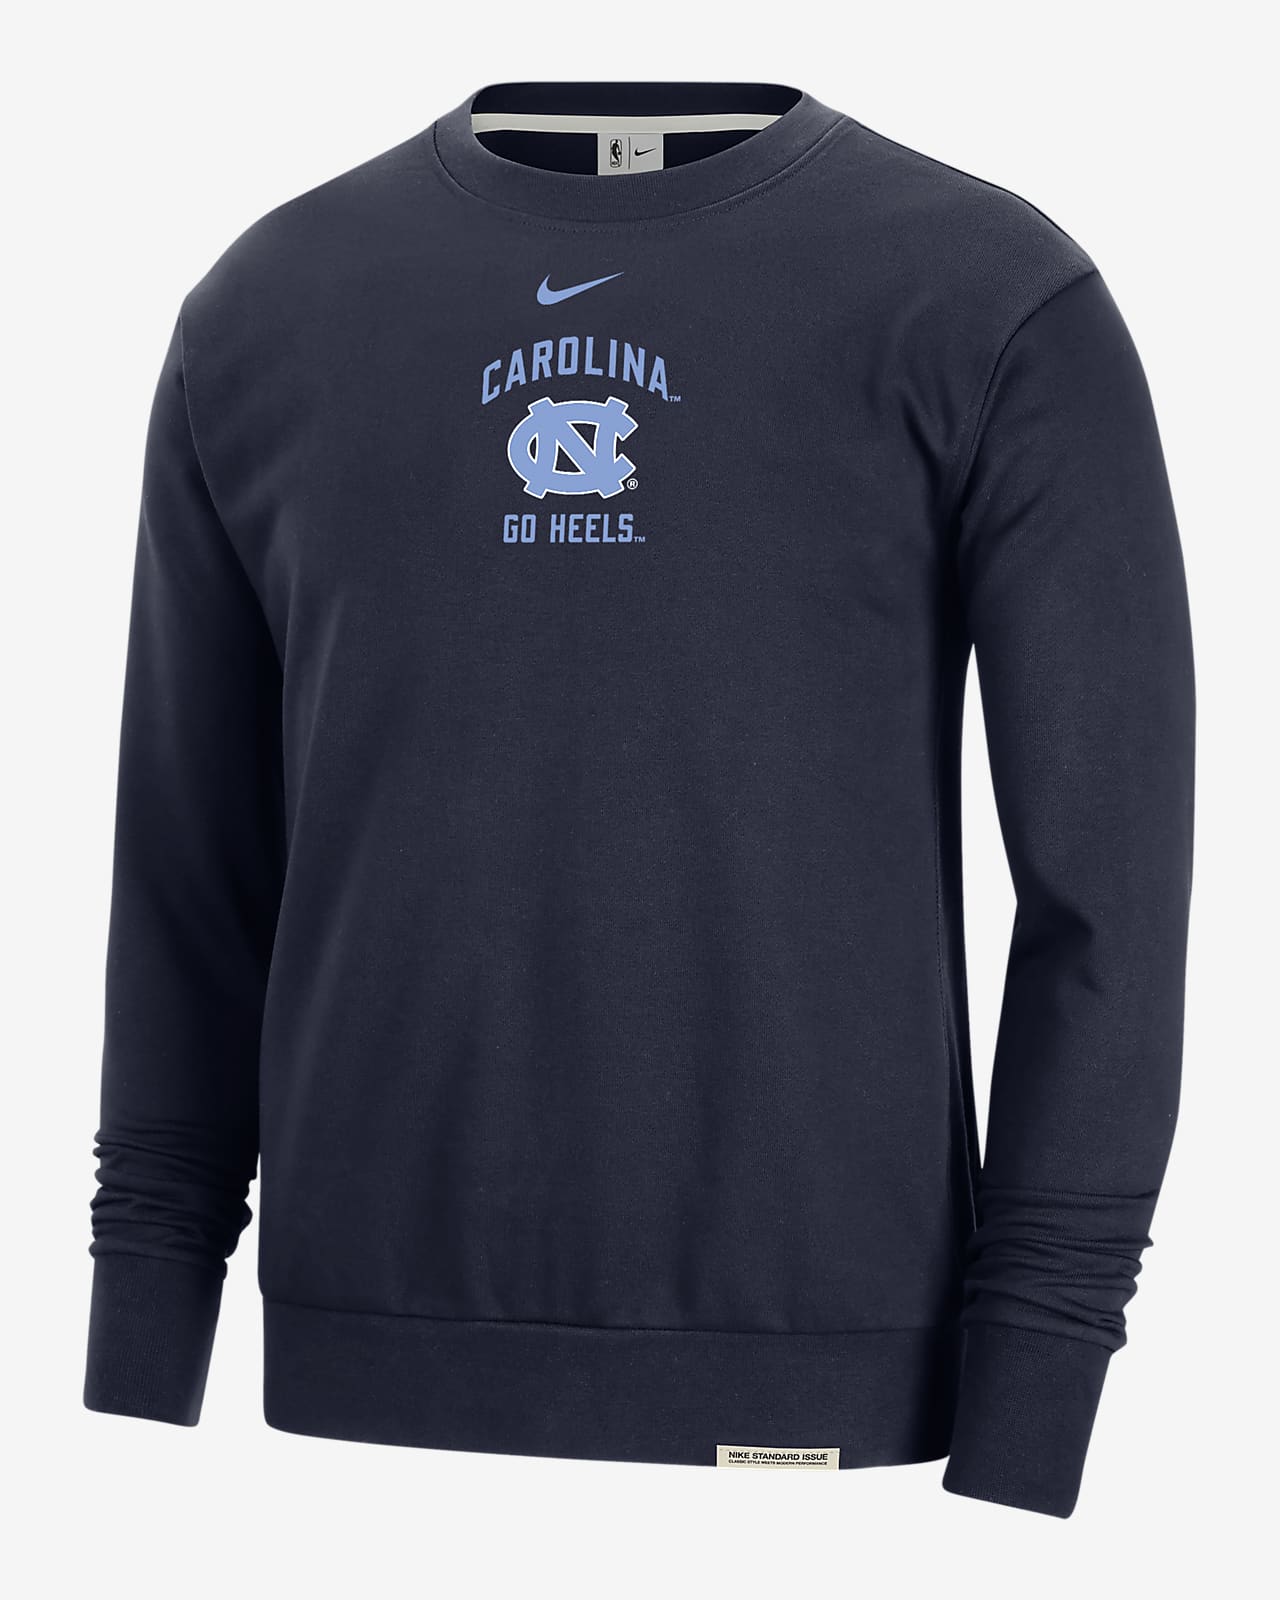 UNC Standard Issue Men's Nike College Fleece Crew-Neck Sweatshirt